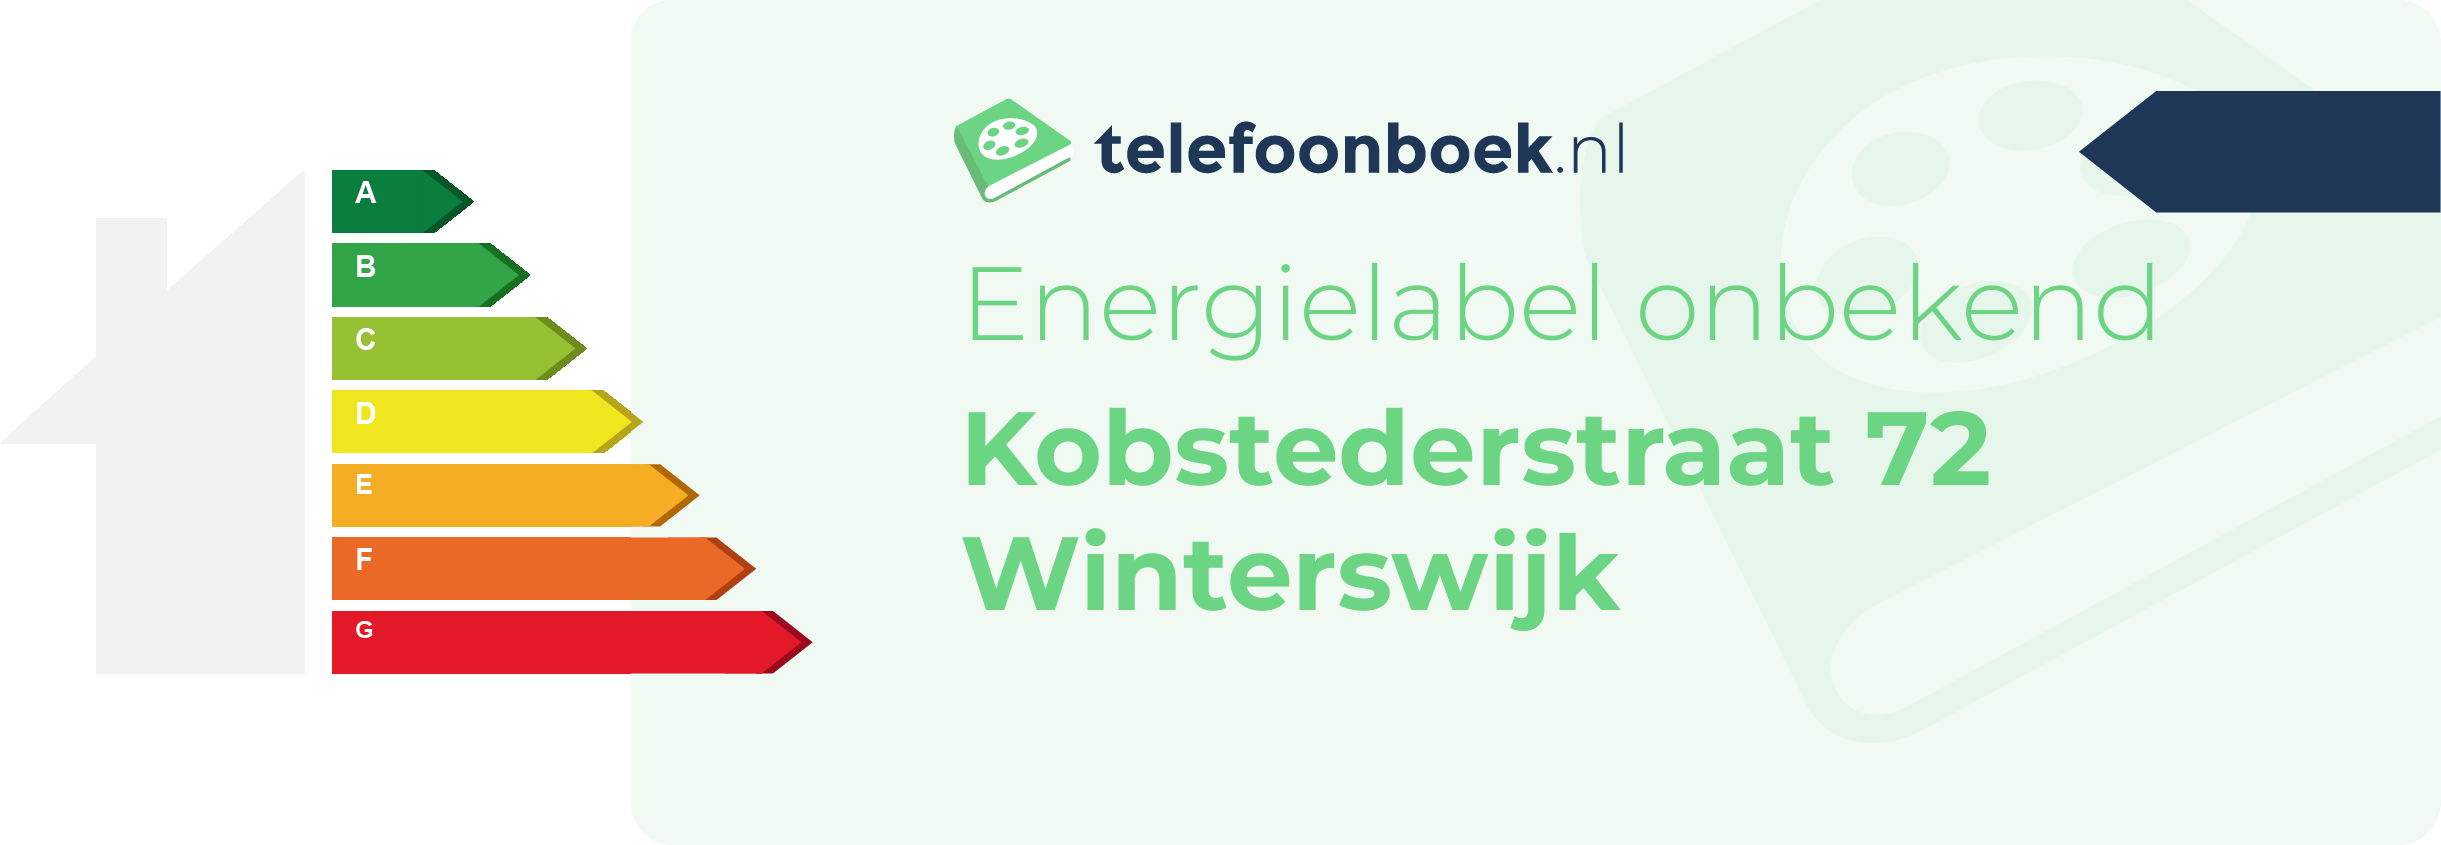 Energielabel Kobstederstraat 72 Winterswijk